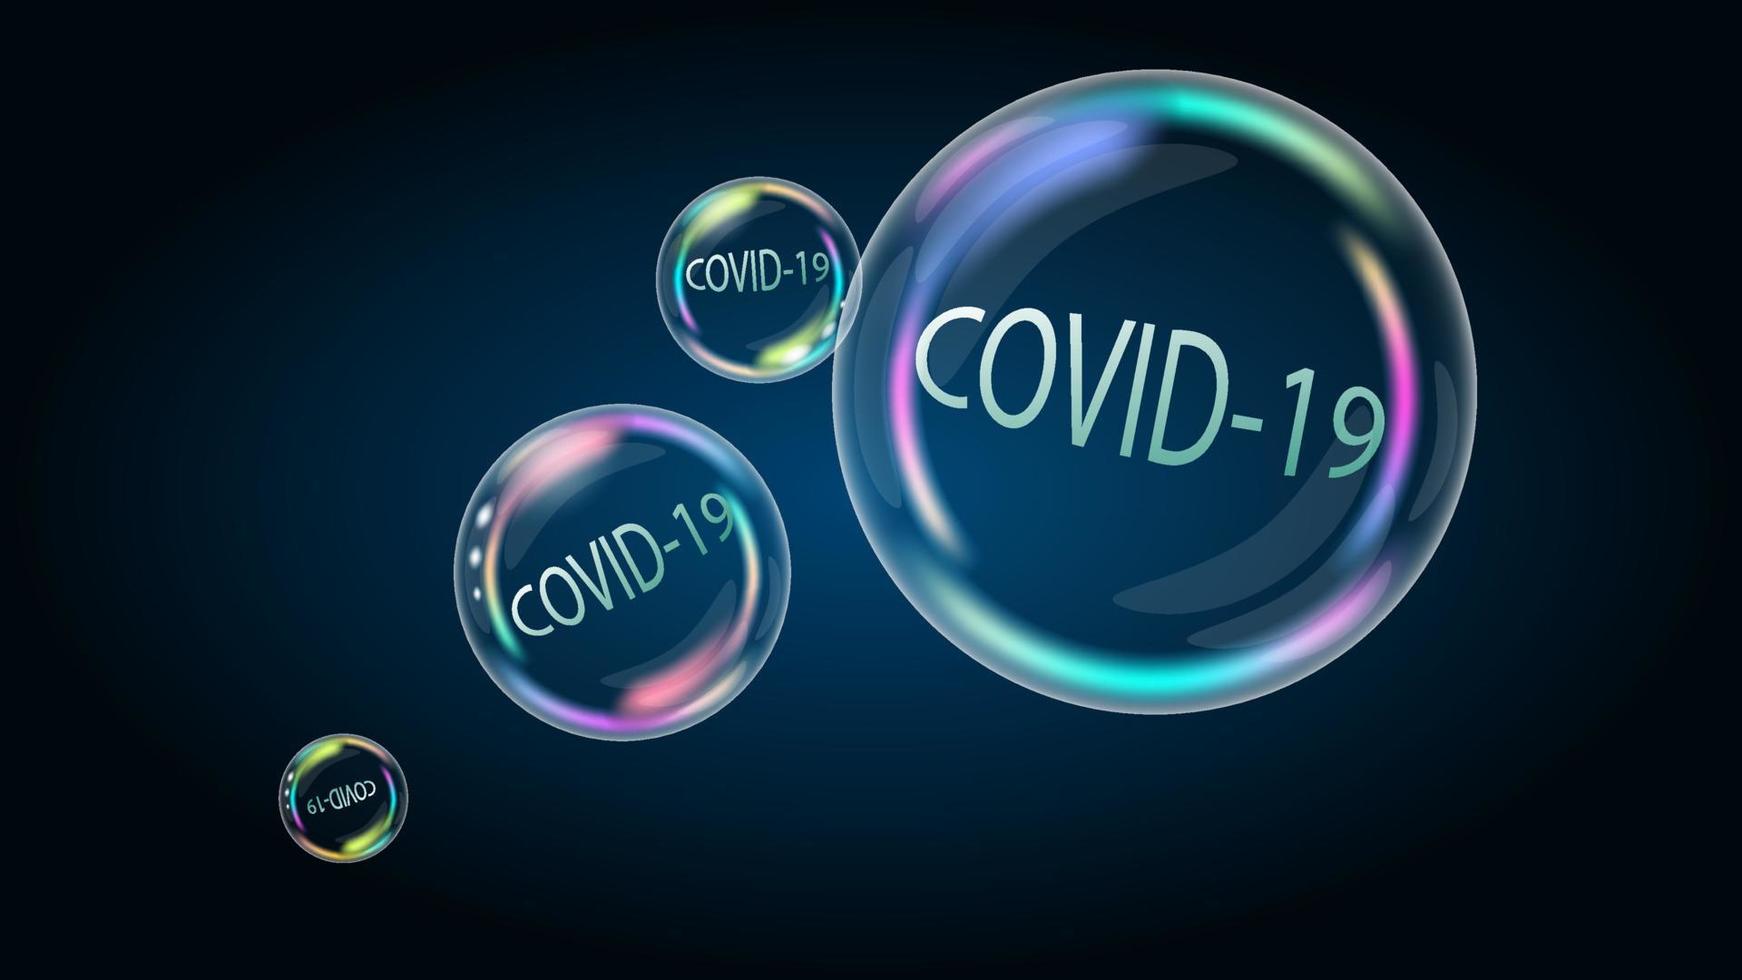 le coronavirus covid-19 est un problème gonflé dans la bulle de savon. les fausses nouvelles éclateront bientôt et seront détruites. vecteur eps10.